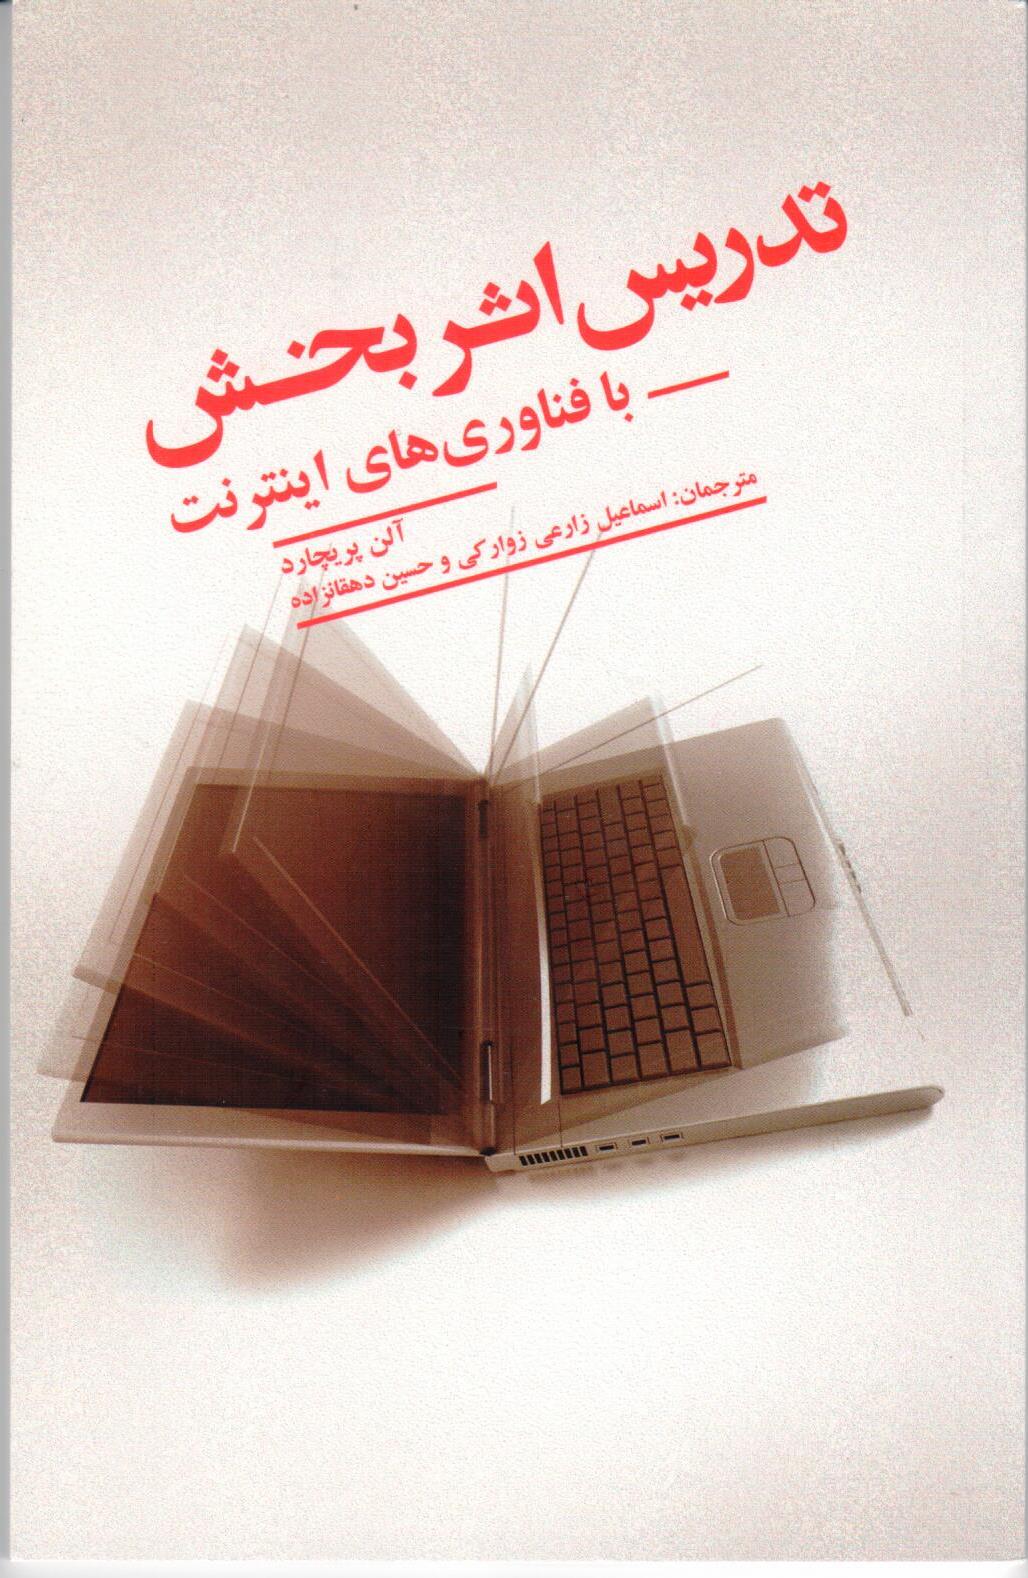 انتشارات علمی و فرهنگی کتاب « تدریس اثر بخش با فناوری های اینترنت » را منتشر کرد